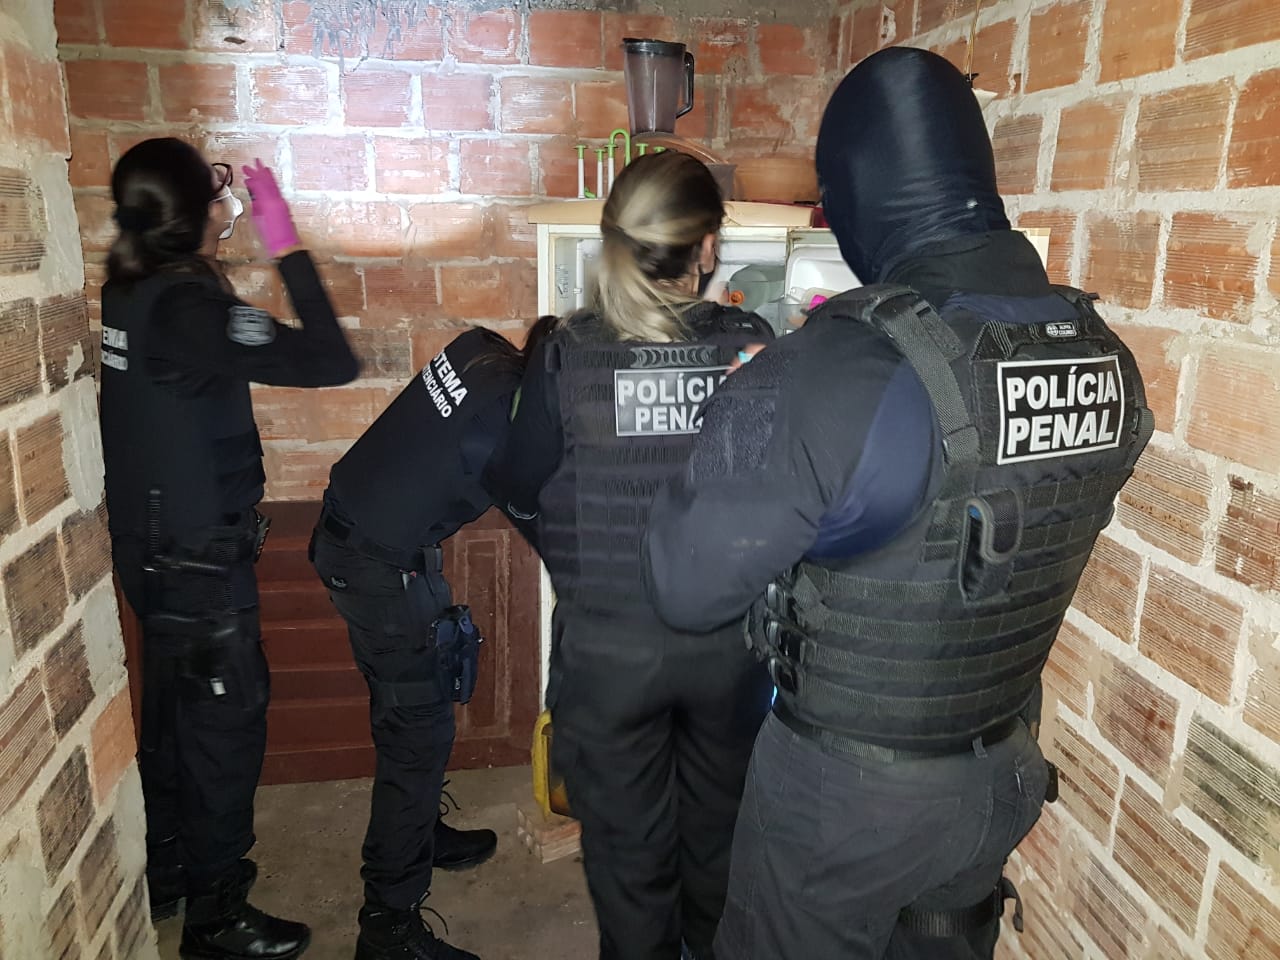 Policiais Penais participaram efetivamente da Operação Contraordem em parceria coma a Polícia Civil